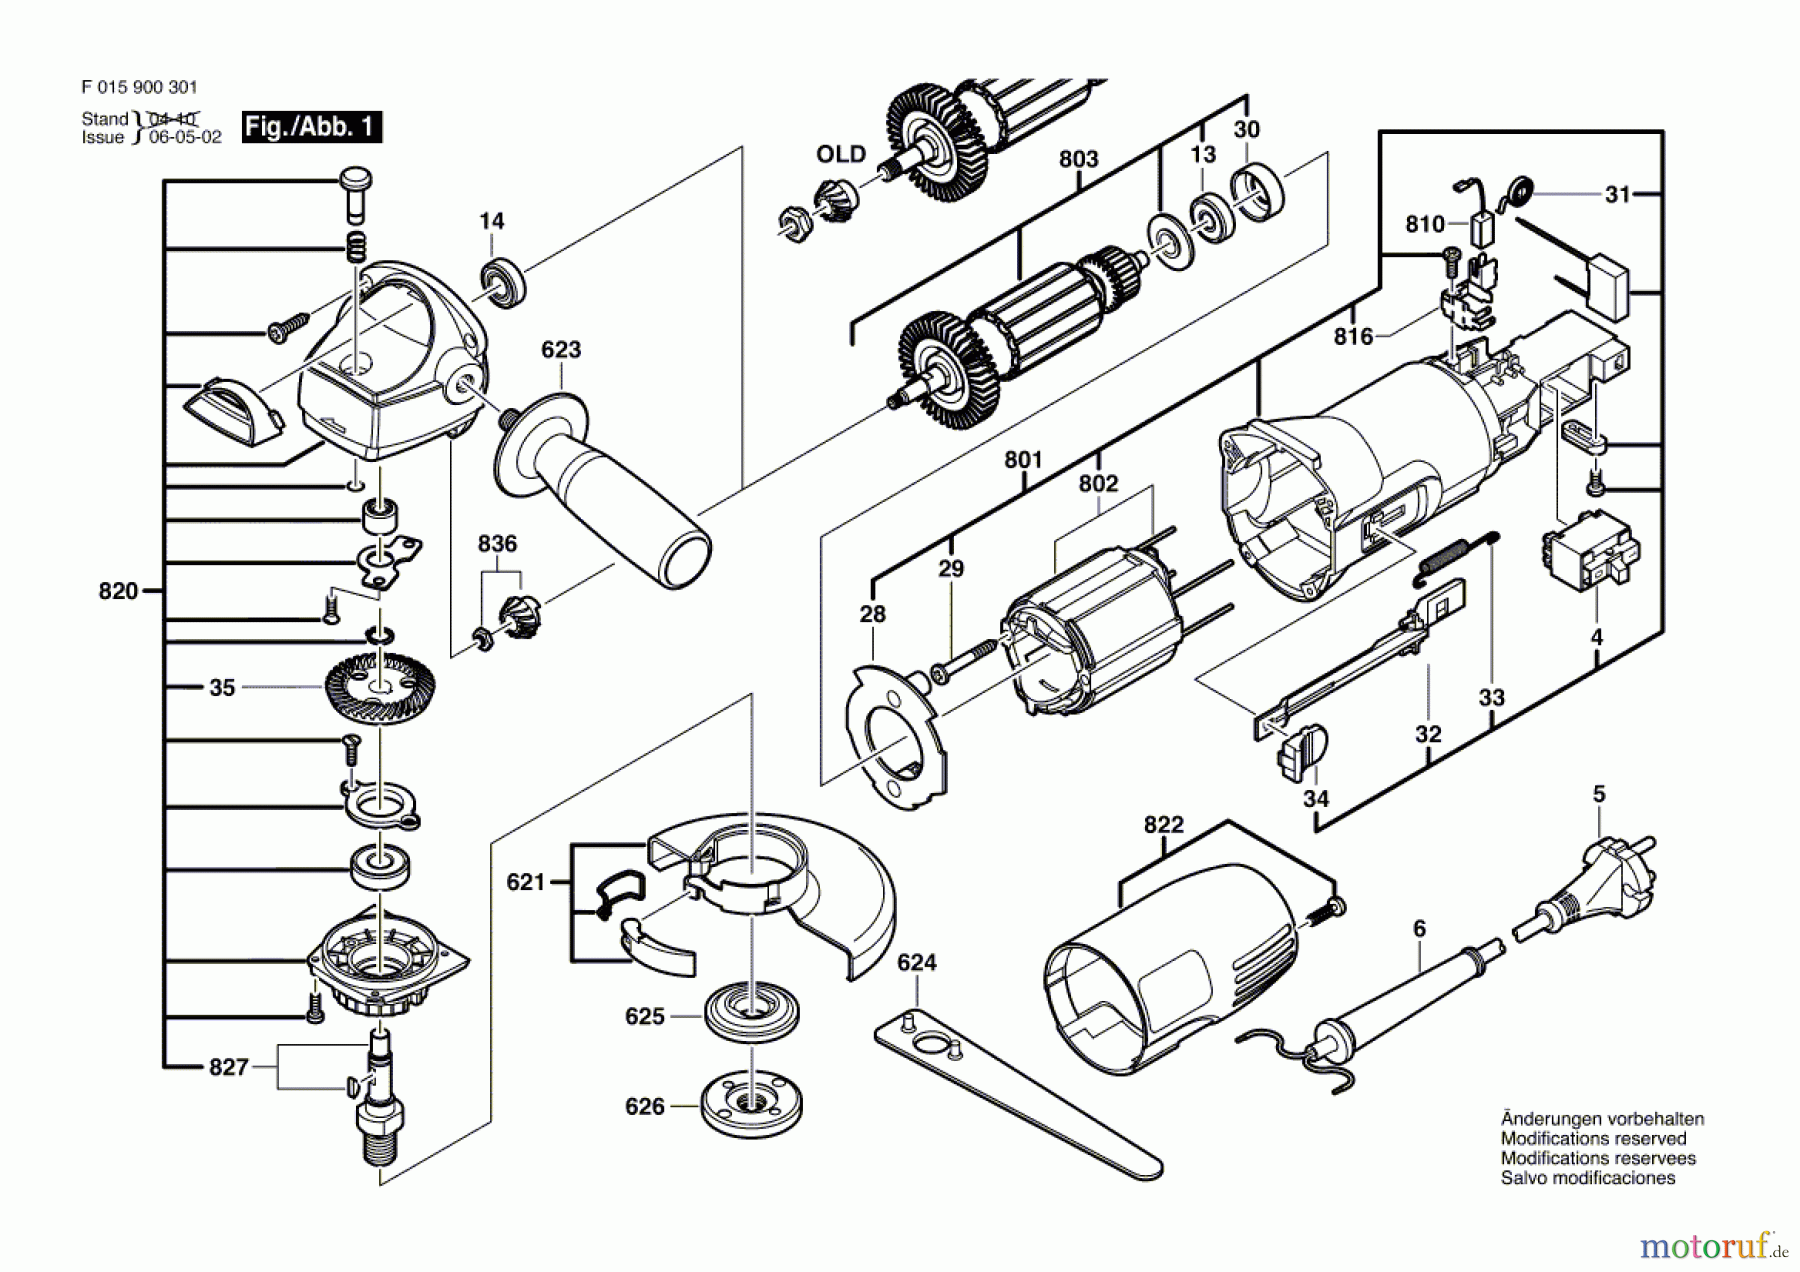  Bosch Werkzeug Winkelschleifer 9376 Seite 1